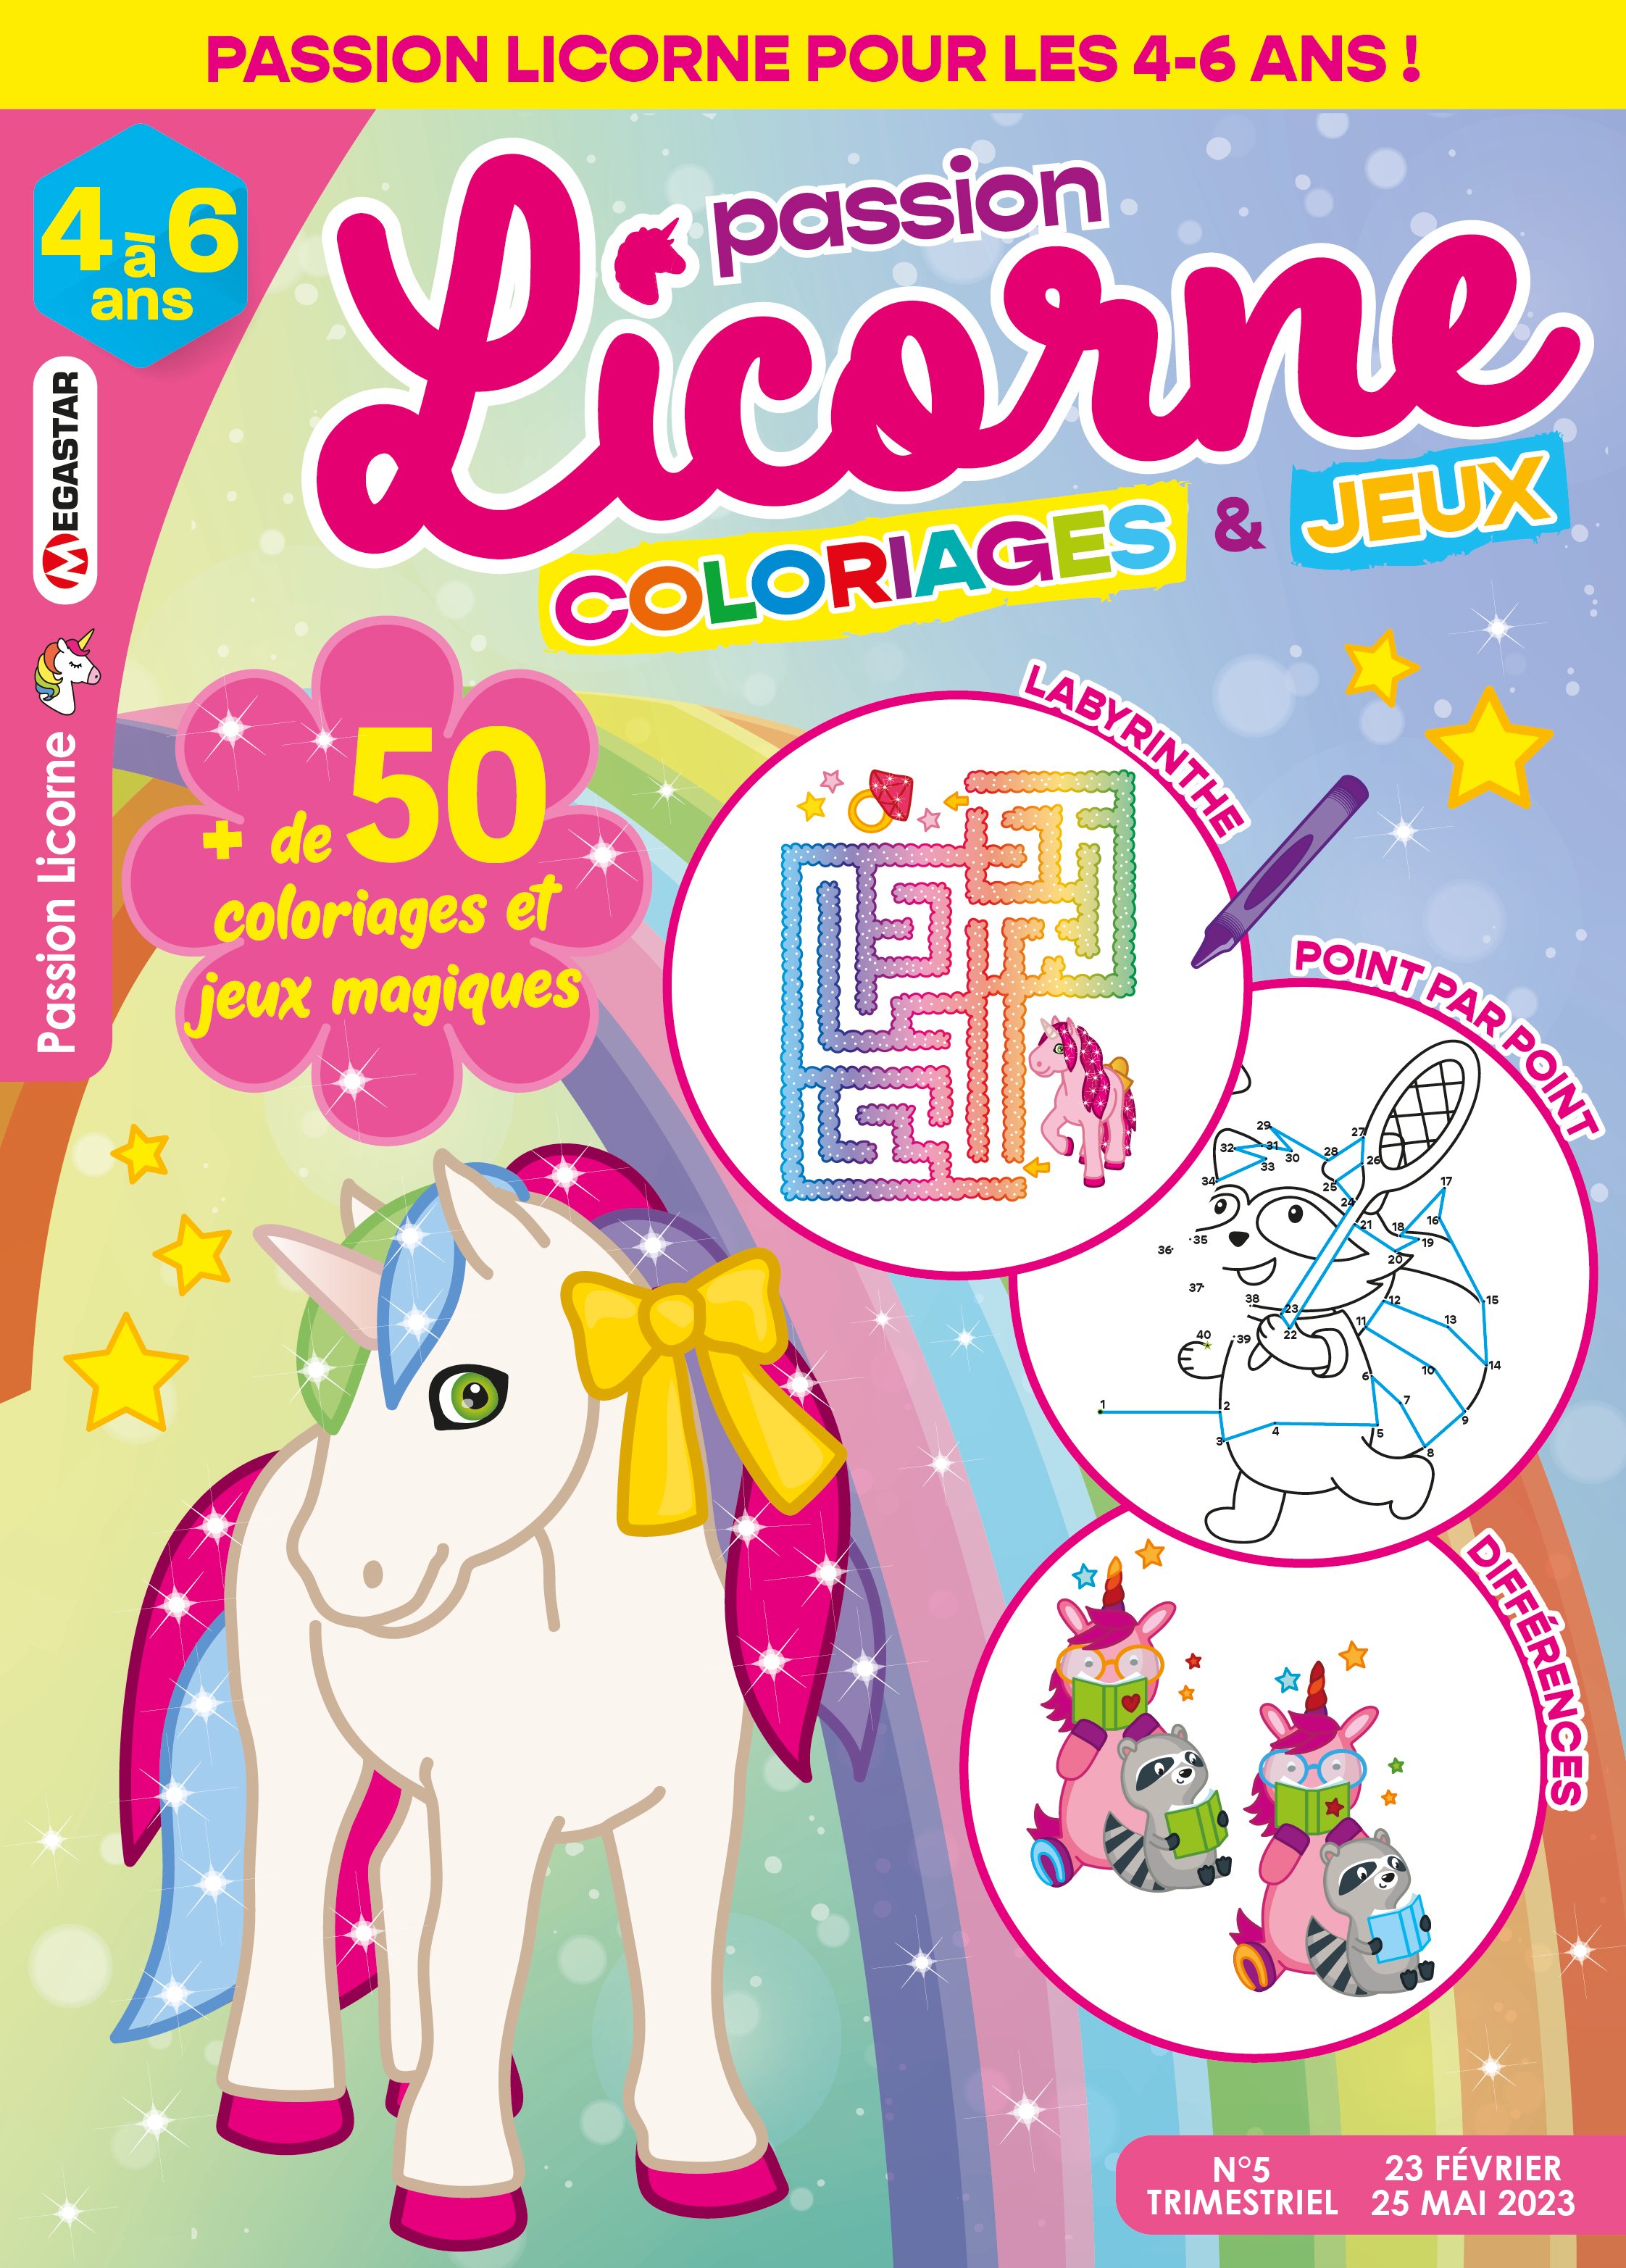 Passion licorne Coloriages et jeux Numéro 5